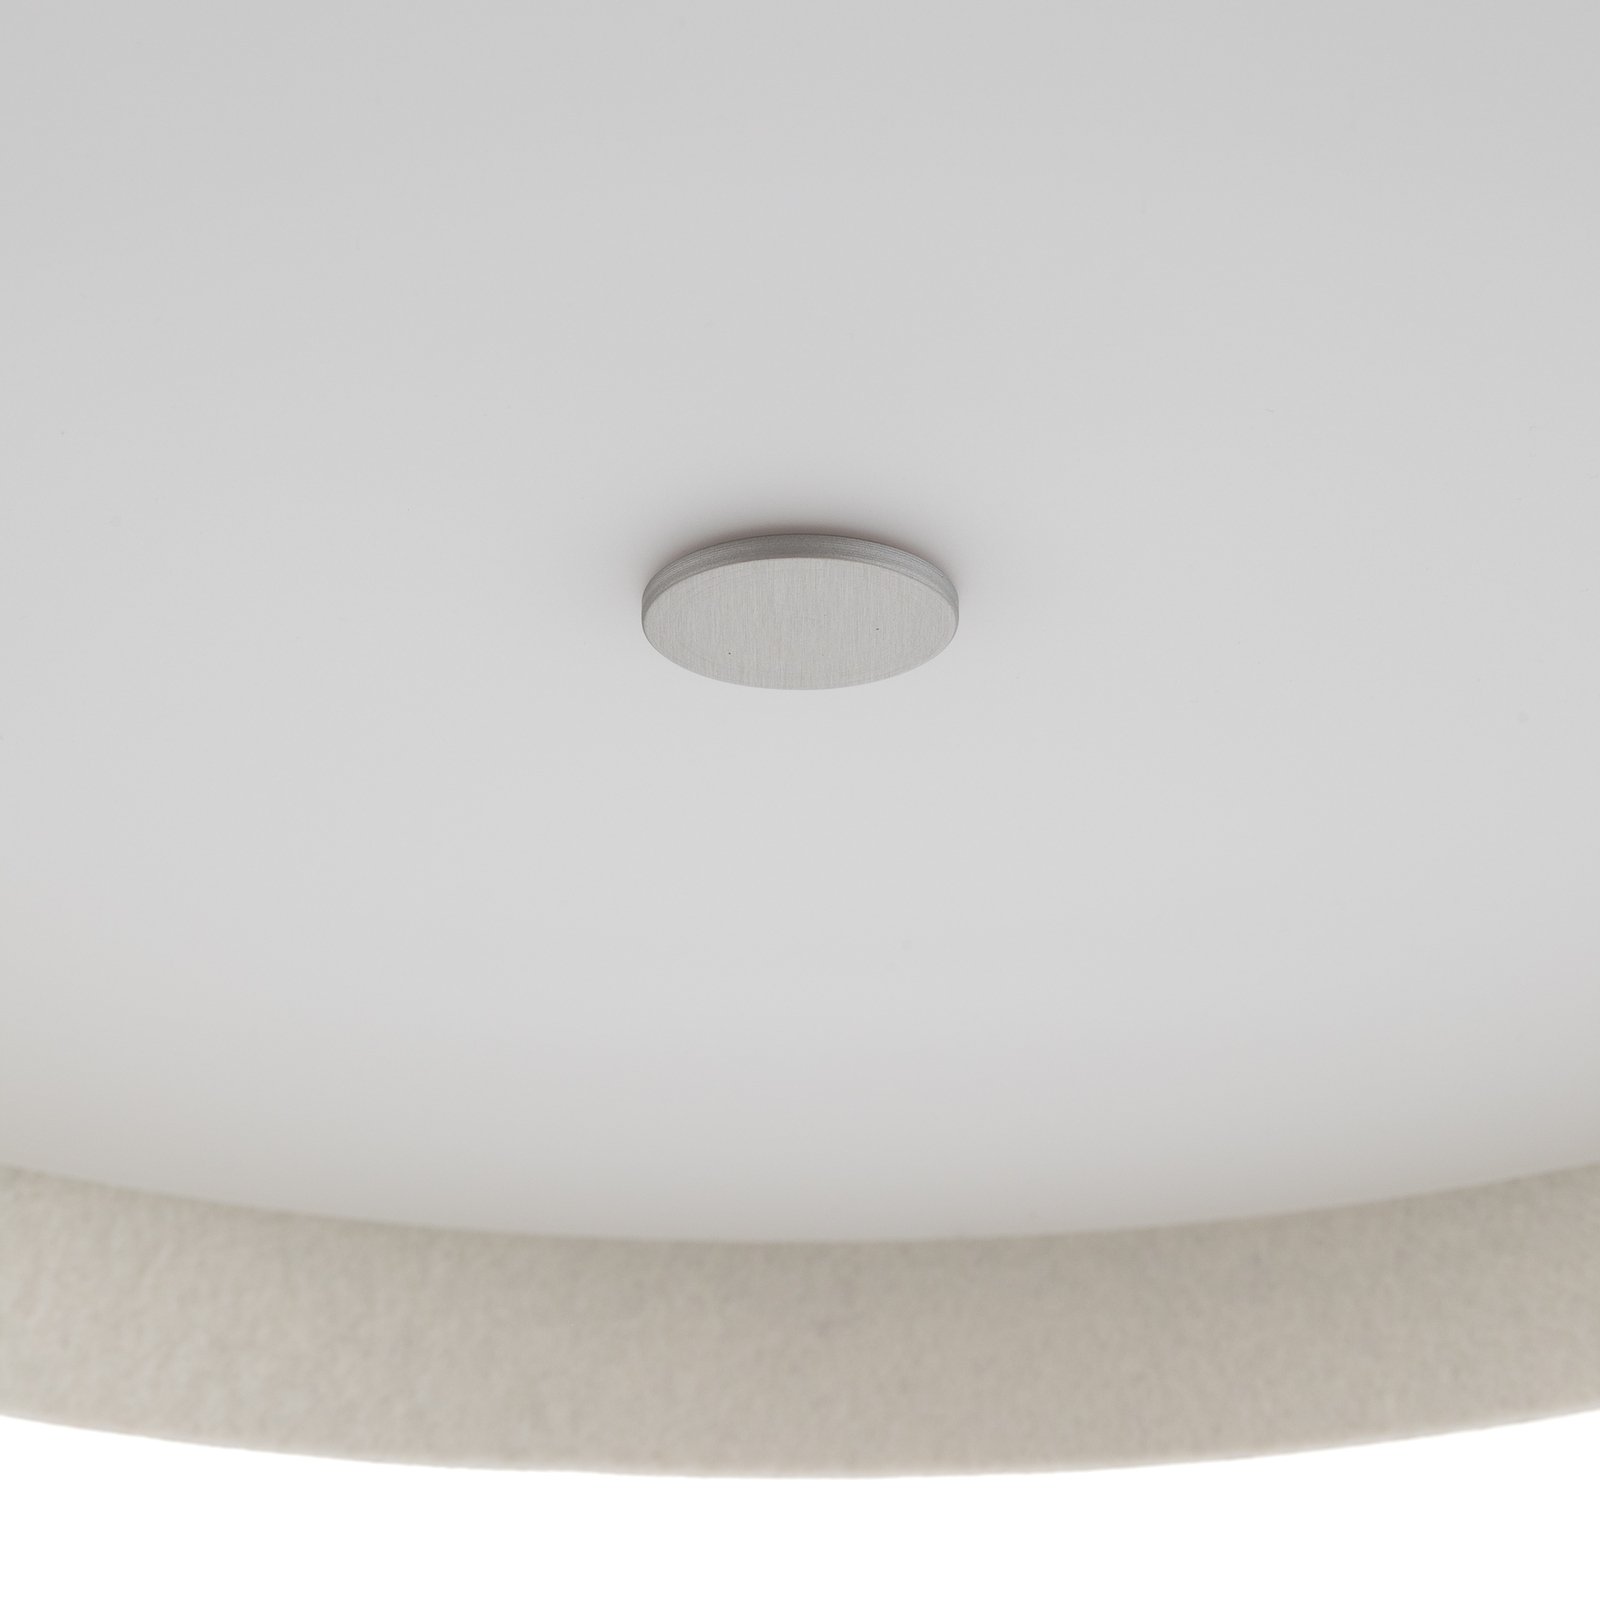 Plstěné stropní svítidlo Lara plstěné s LED šedo-vlněnou bílou barvou